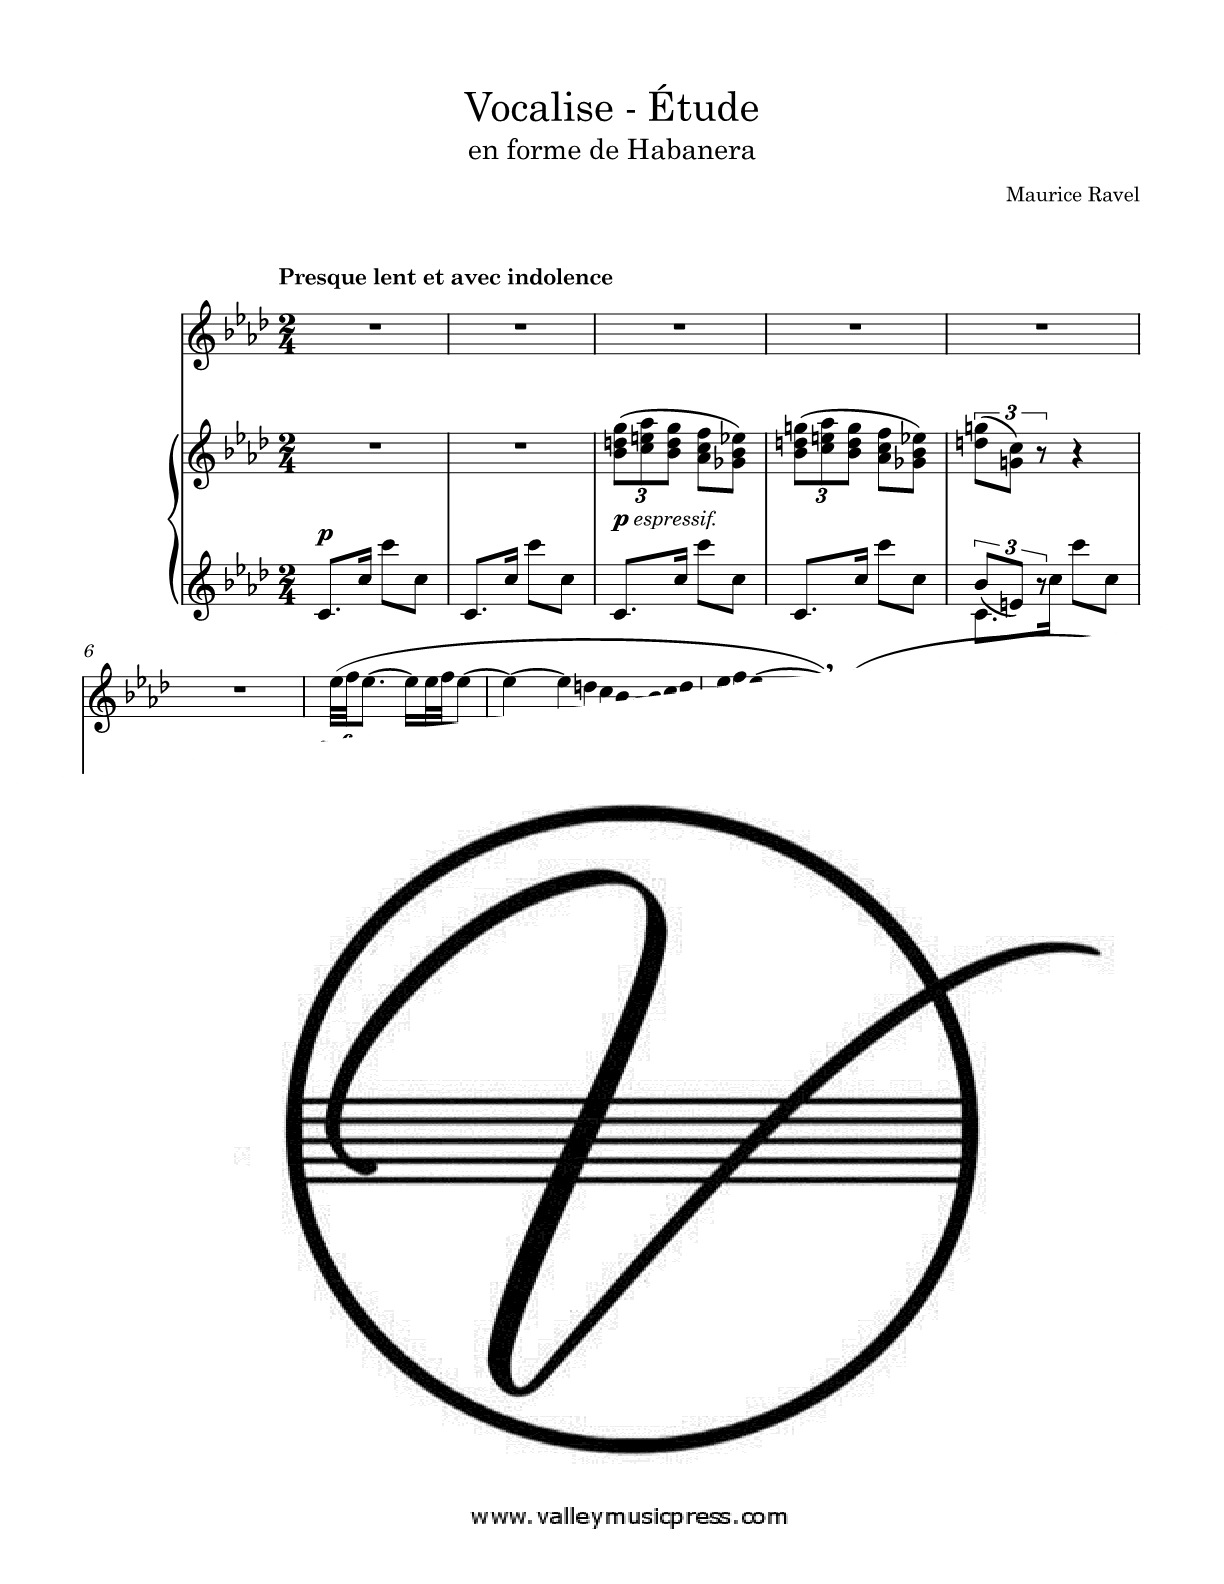 Ravel - Vocalise - Etude en forme de Habanera (Voice)